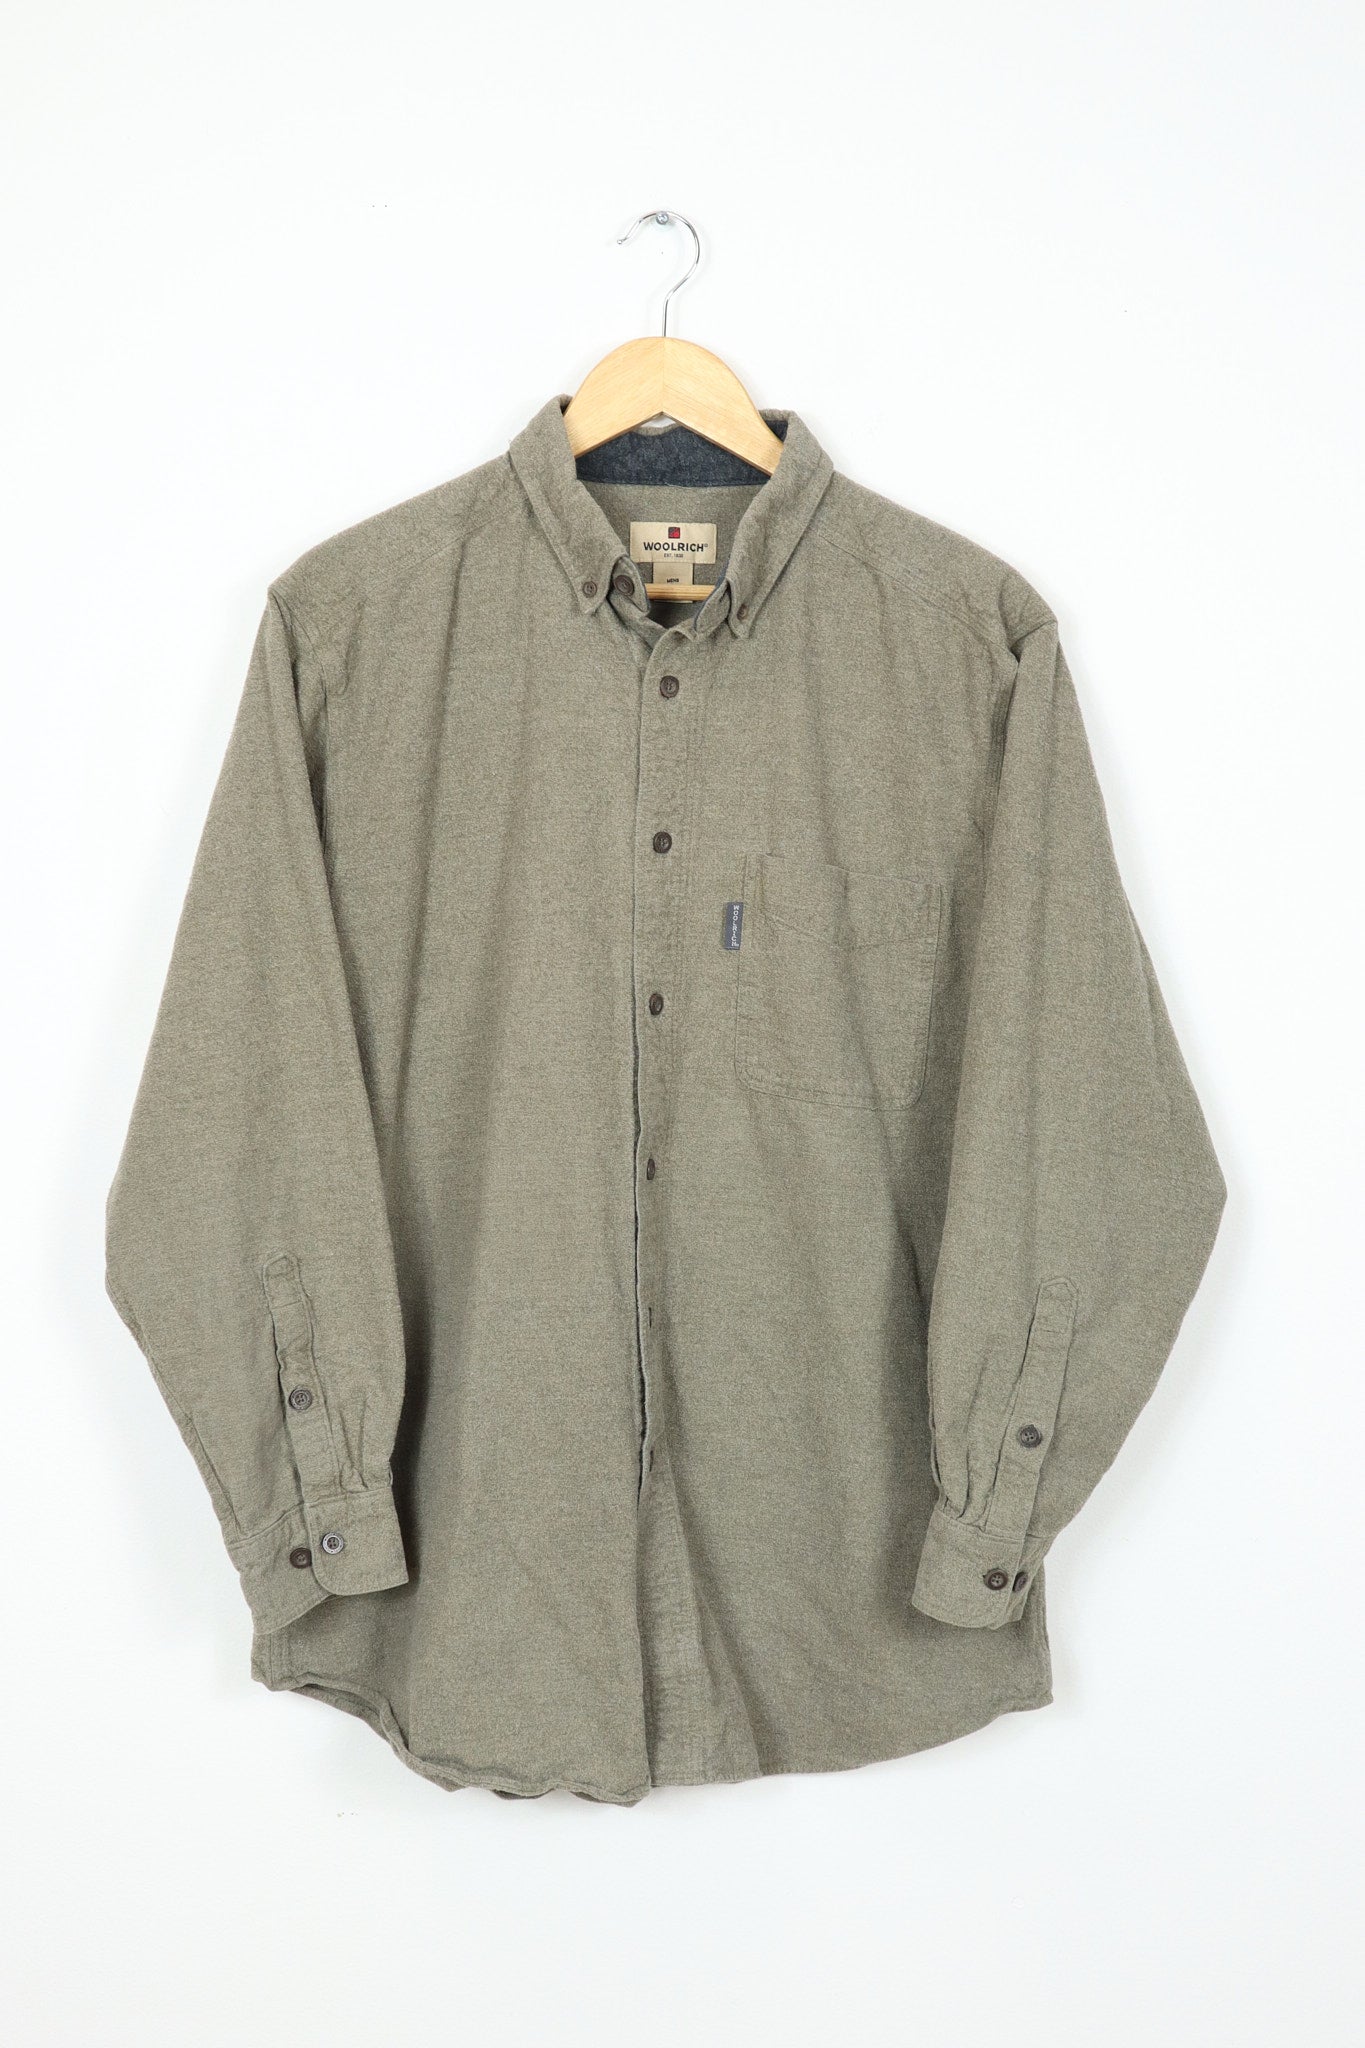 Woolrich Brown Flannel Button-Down